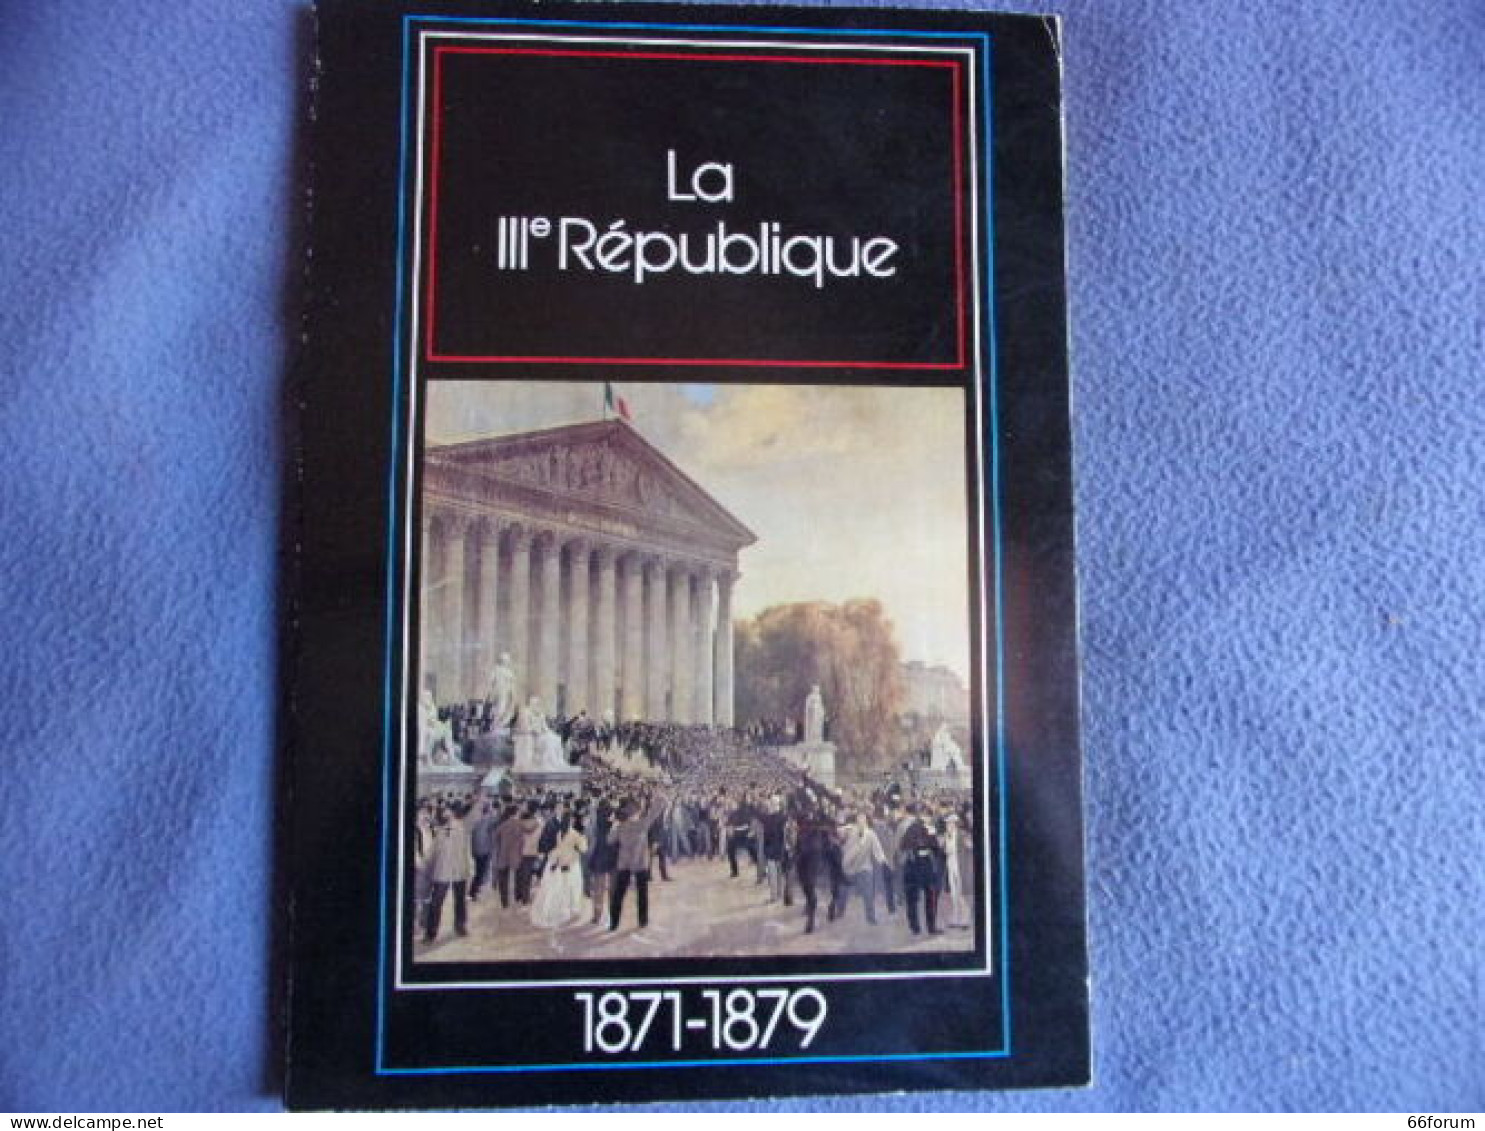 La III° République 1871-1879 - Geschichte